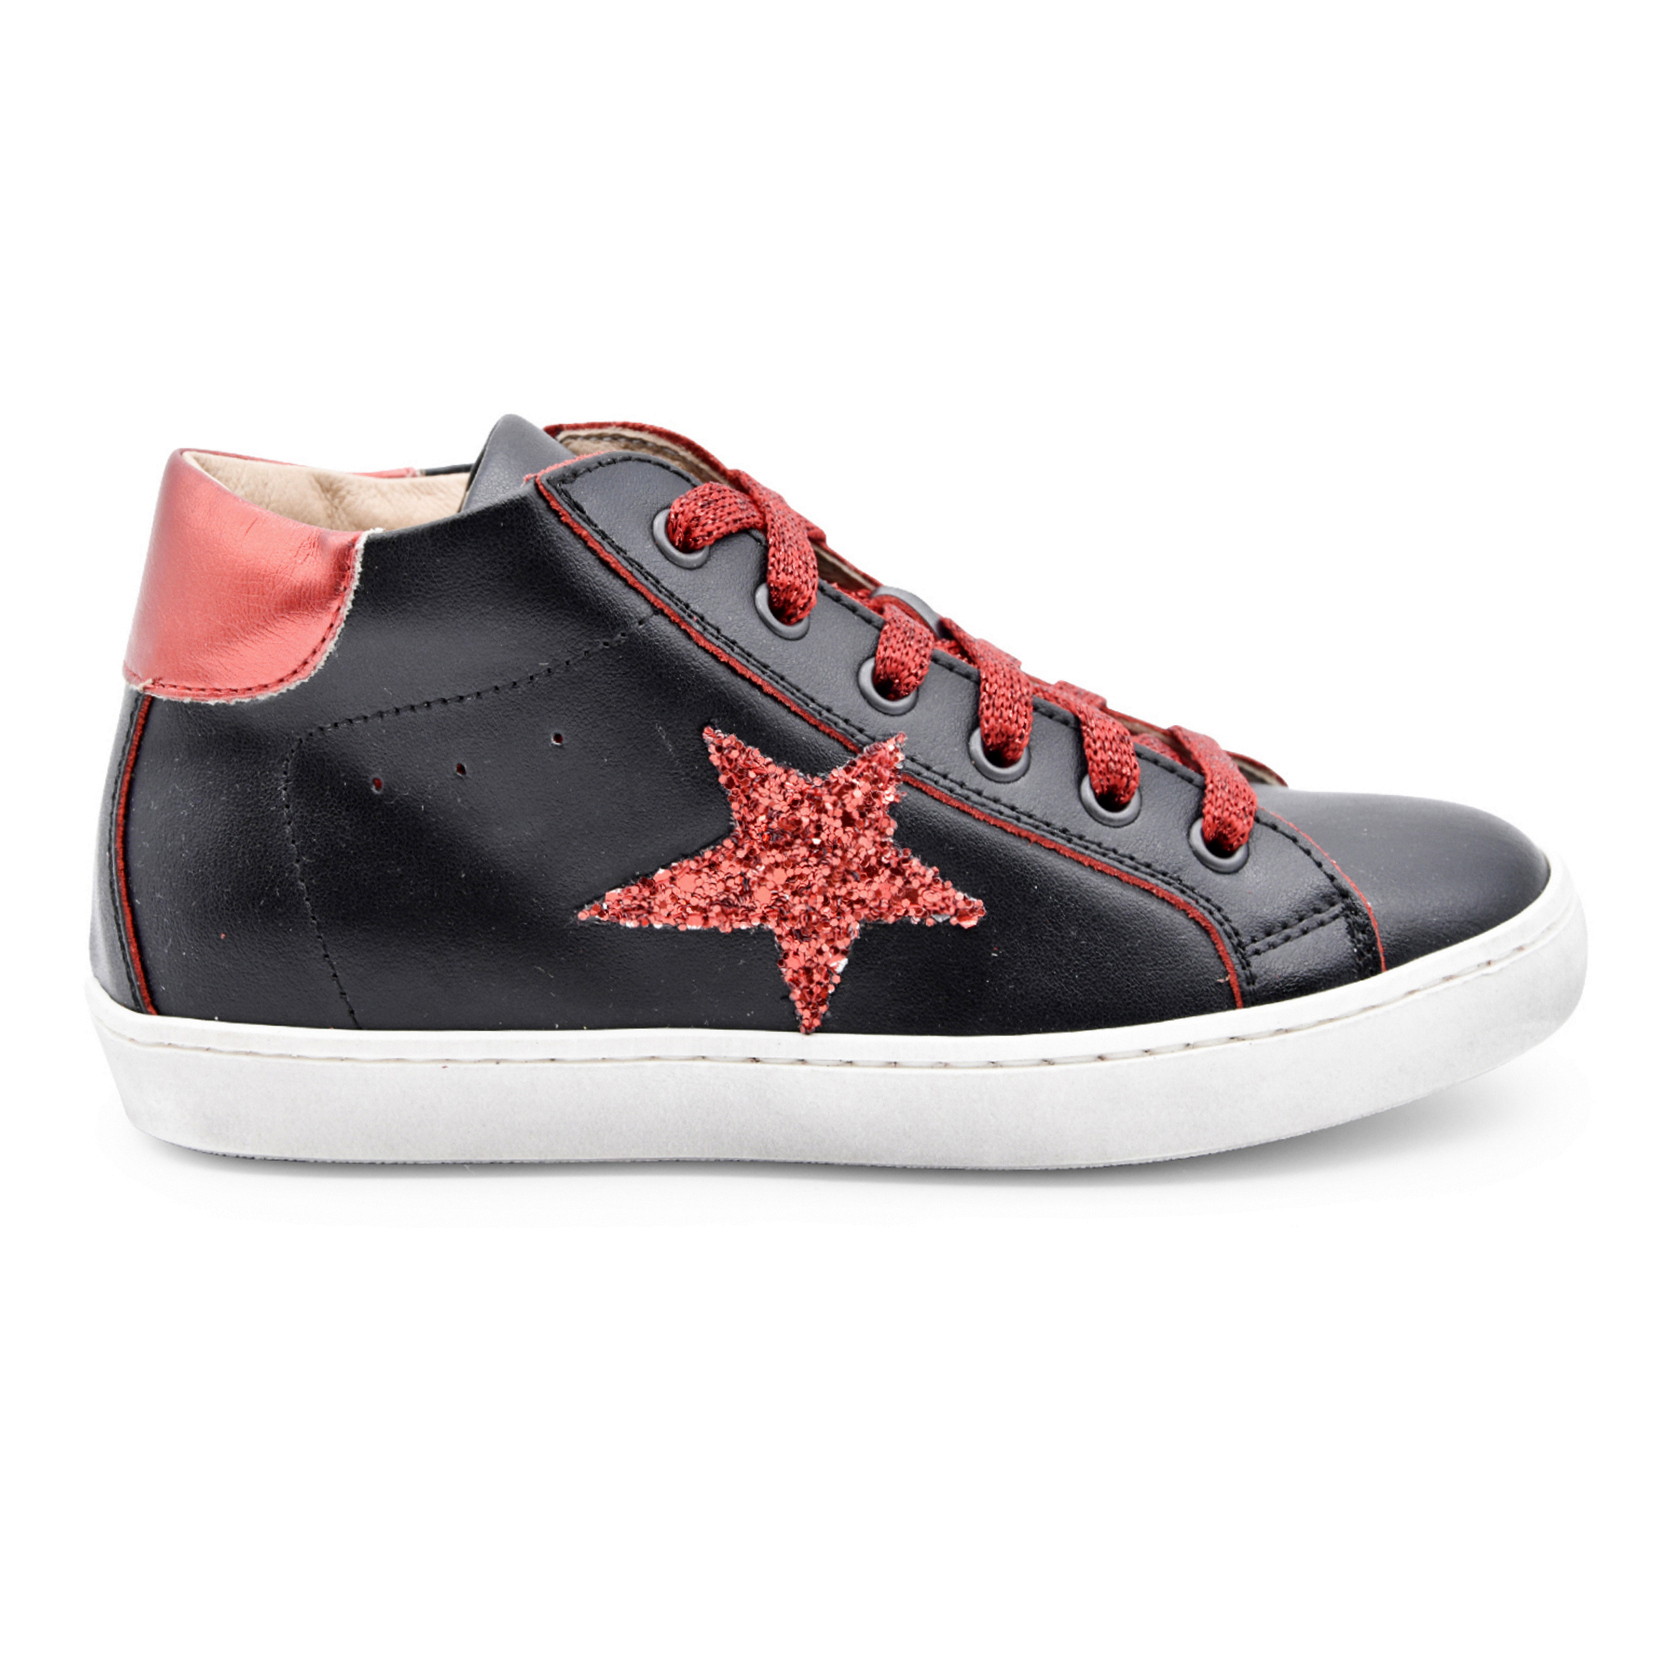 Dianetti Casual, sneakers, made in Italy, pelle, lacci, zip, nero, rosso glitter, profilo